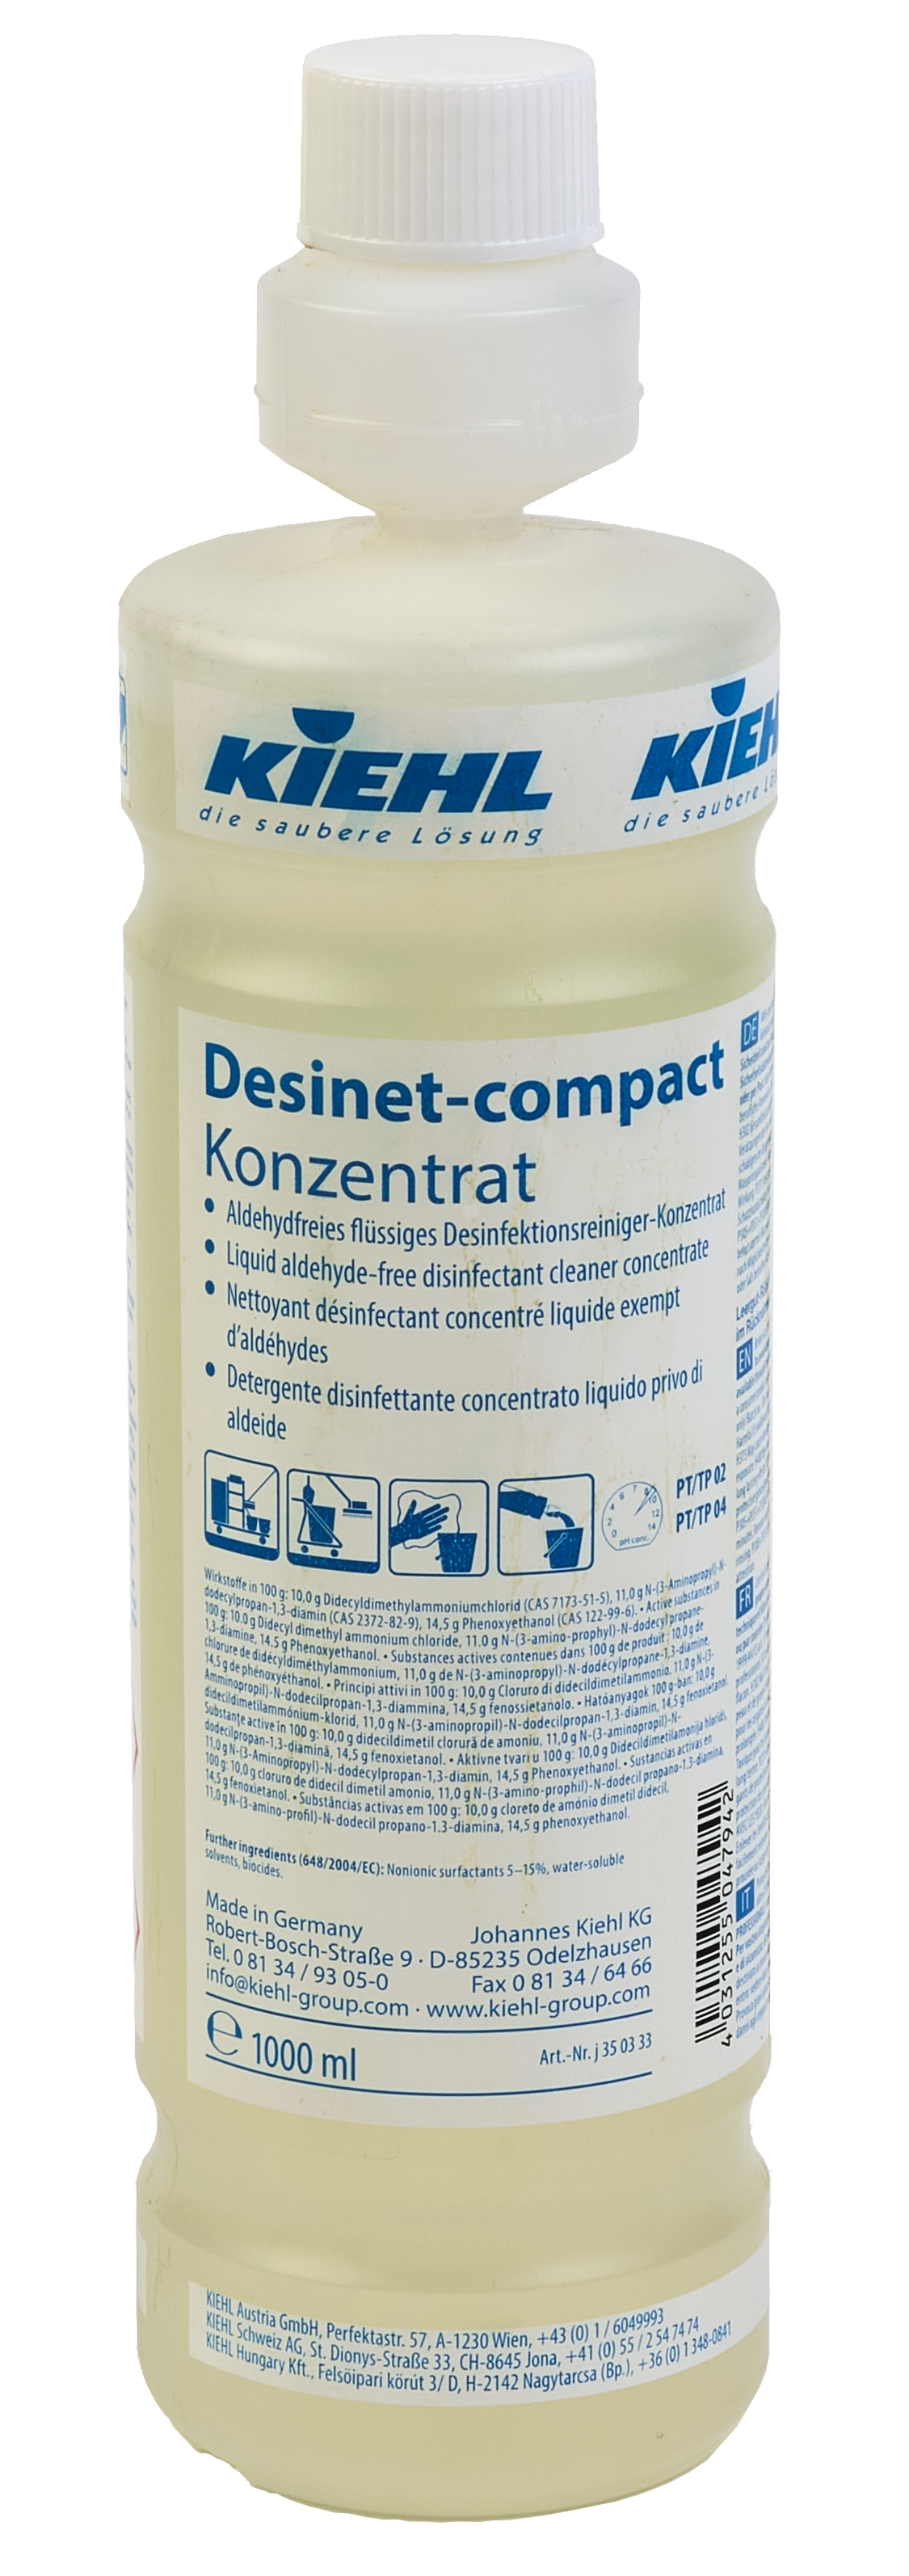 Liter - Desinfektionsreiniger-Konzentrat Flasche Kiehl von 1 Desinet-compact